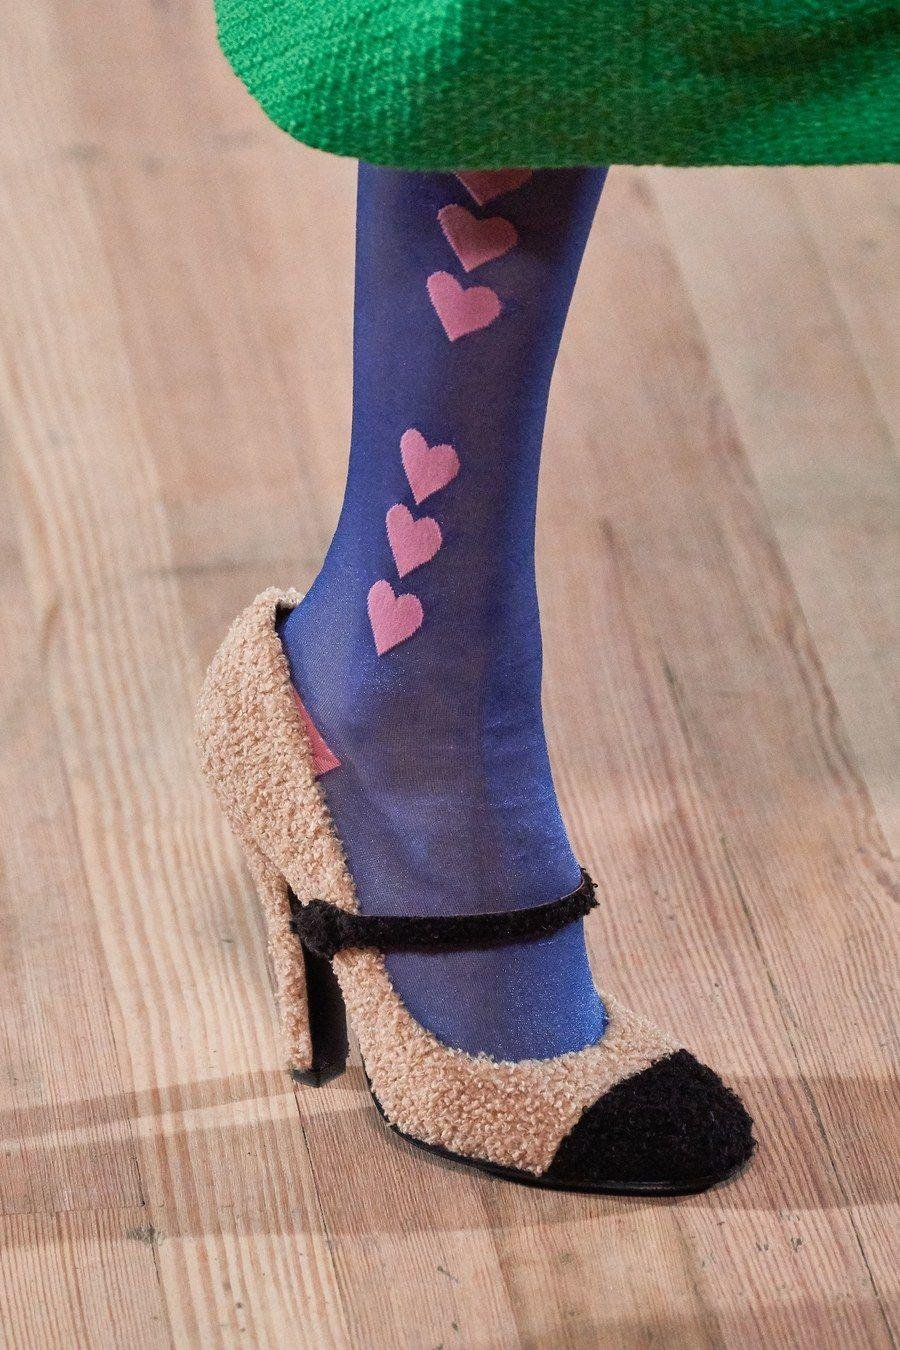 حذاء شوز أكسسوار موضة ربيع 2020 ملابس على الموضة أزياء نسائية تصاميم